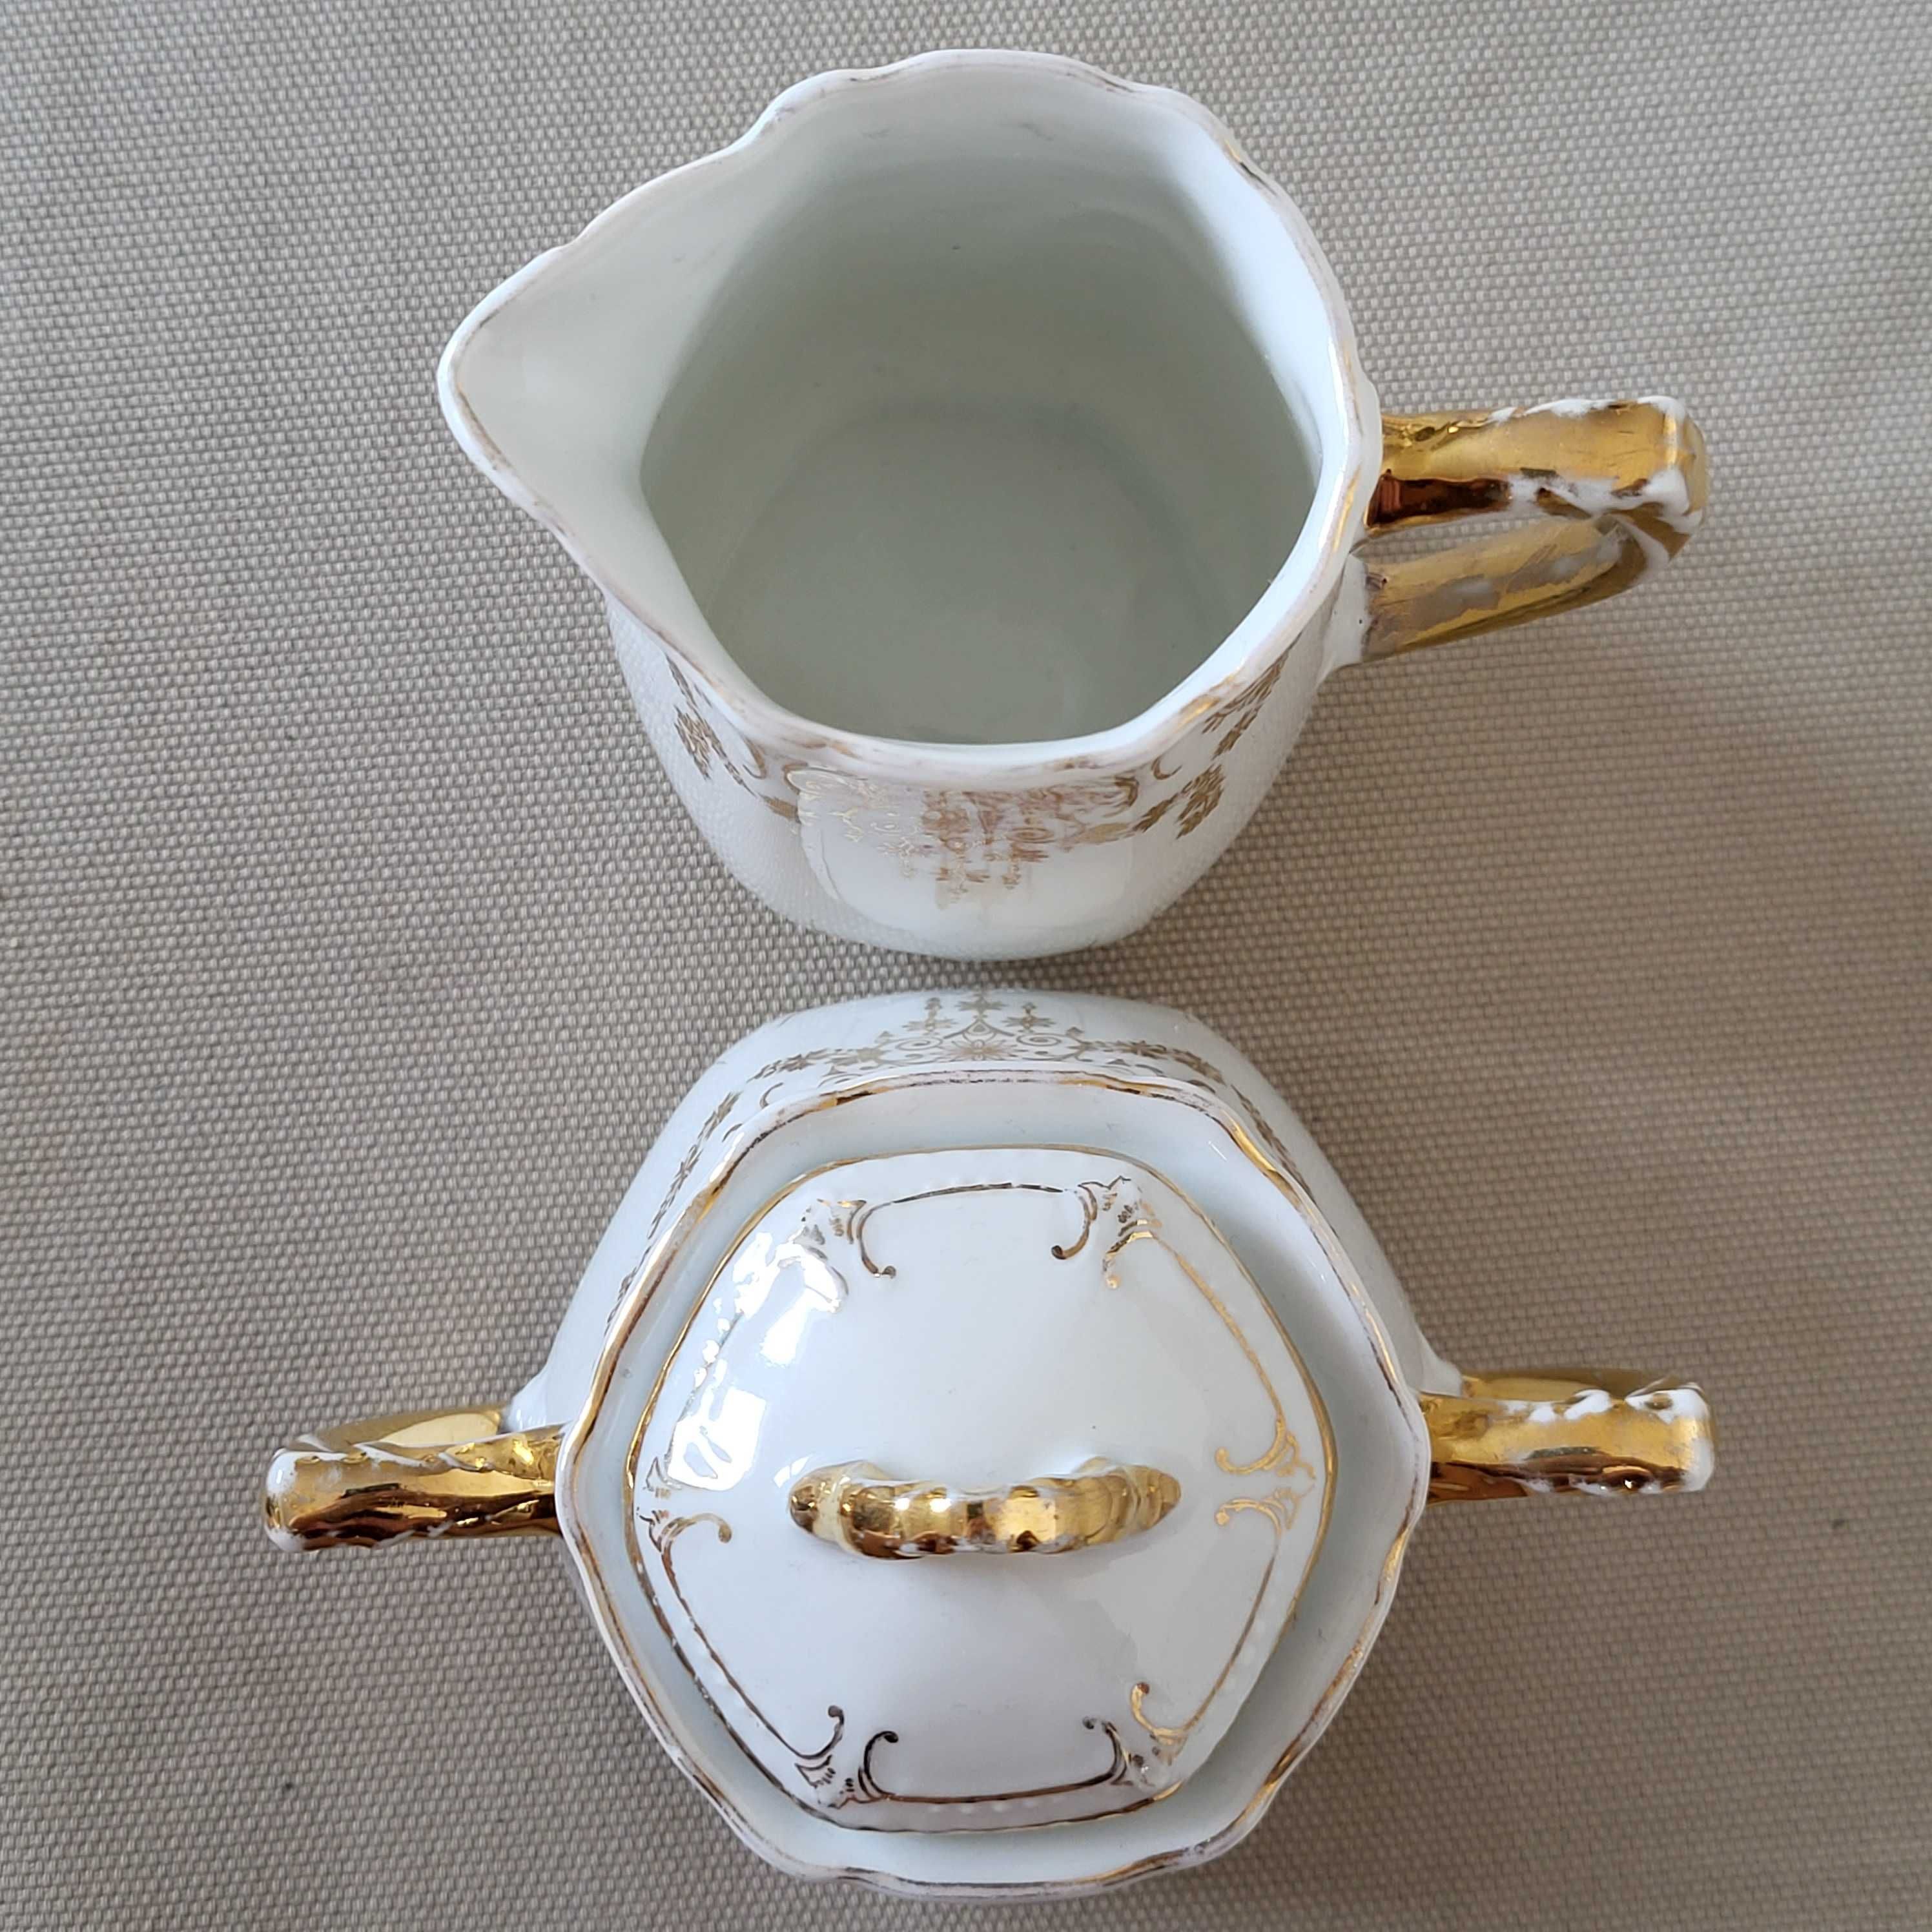 Porcelanowy mlecznik i cukiernica złocona porcelana z wyciskiem antyki